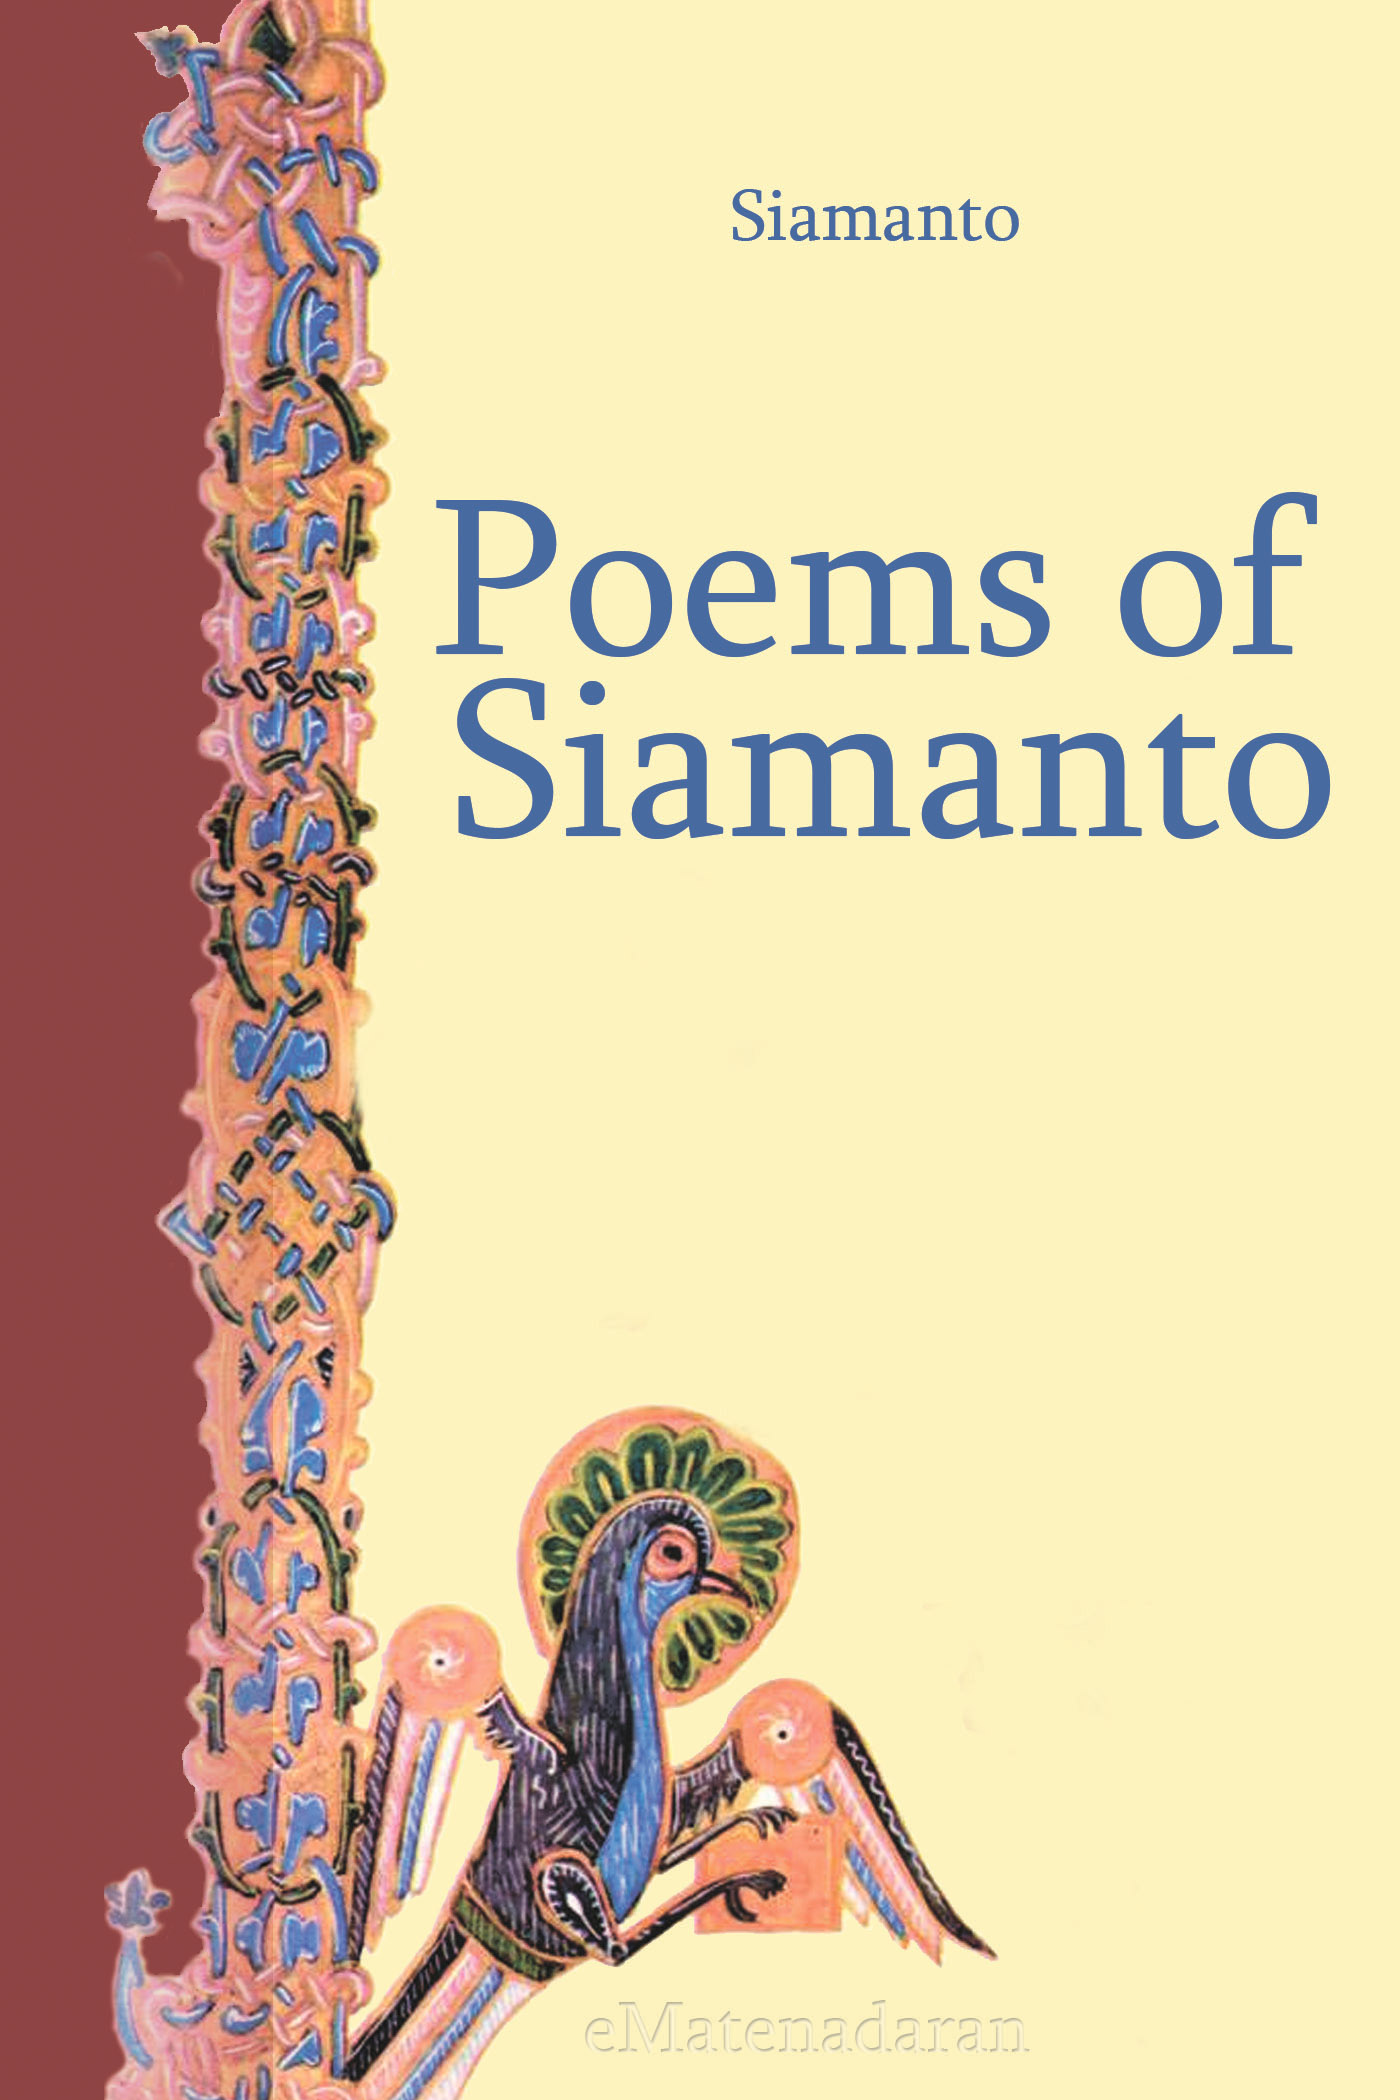 Книга Poems of Siamanto из серии , созданная Siamanto , может относится к жанру Поэзия, Зарубежные стихи, Иностранные языки. Стоимость электронной книги Poems of Siamanto с идентификатором 24429886 составляет 0.90 руб.